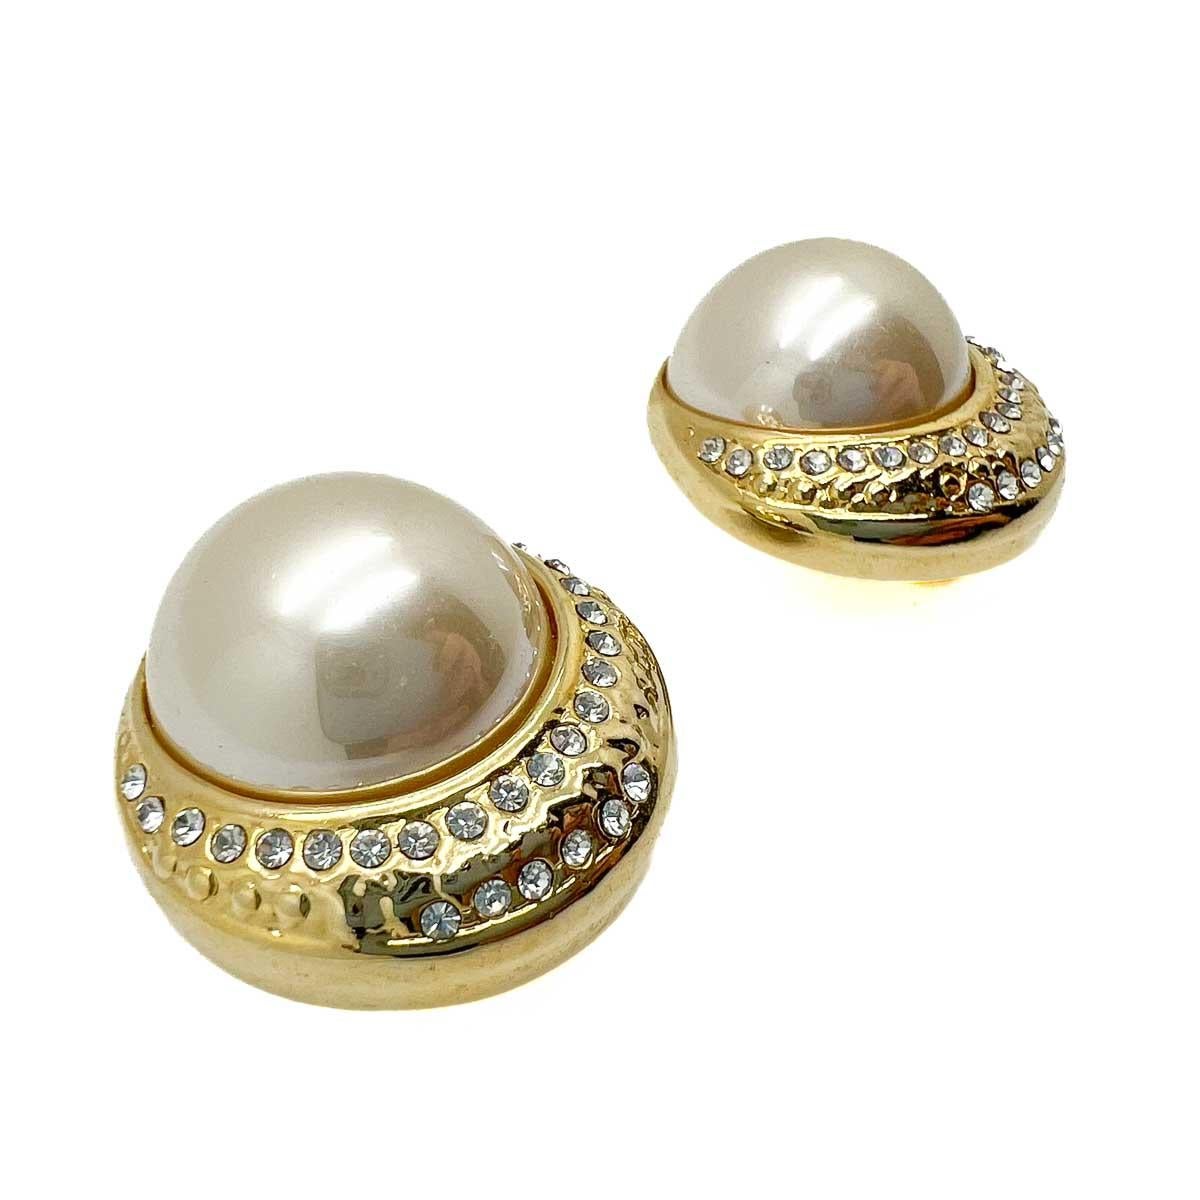 Ein Paar Vintage Grand Pearl Crescent Earrings. Ein atemberaubender Ohrring, der glänzendes Gold mit einer großen Halbperle kombiniert und mit einem Detail in Chaton-Kristall perfektioniert. Gold und Perlen - ein echter Hingucker und ein Muss für